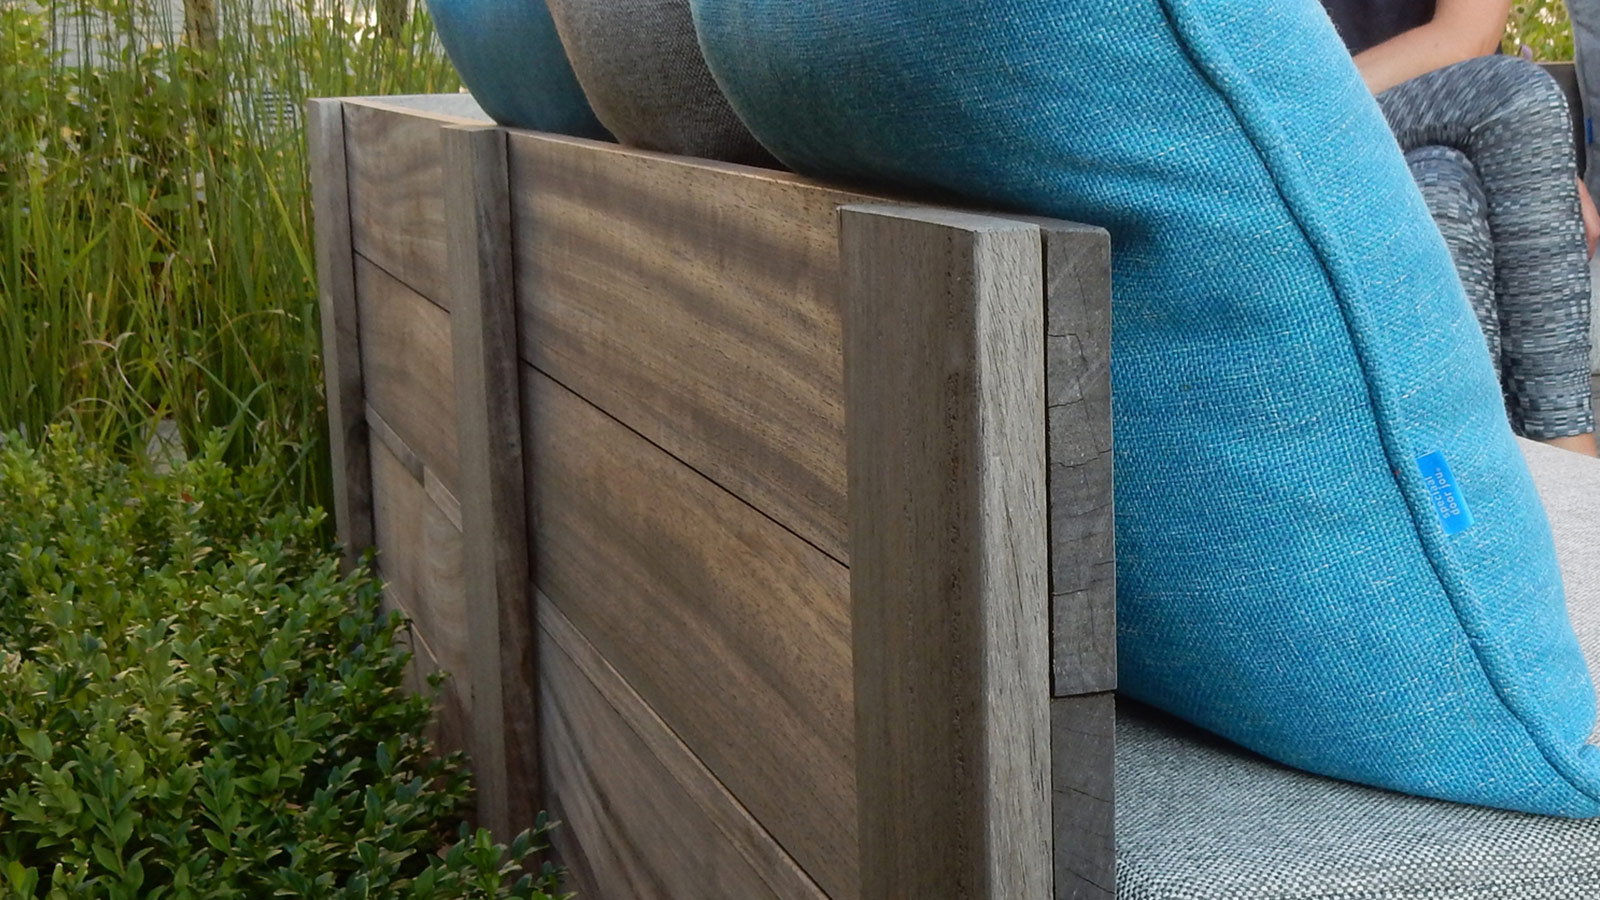 Houten terras in padouk met zitbanken op maat met kussens in een vrolijke accentkleur.